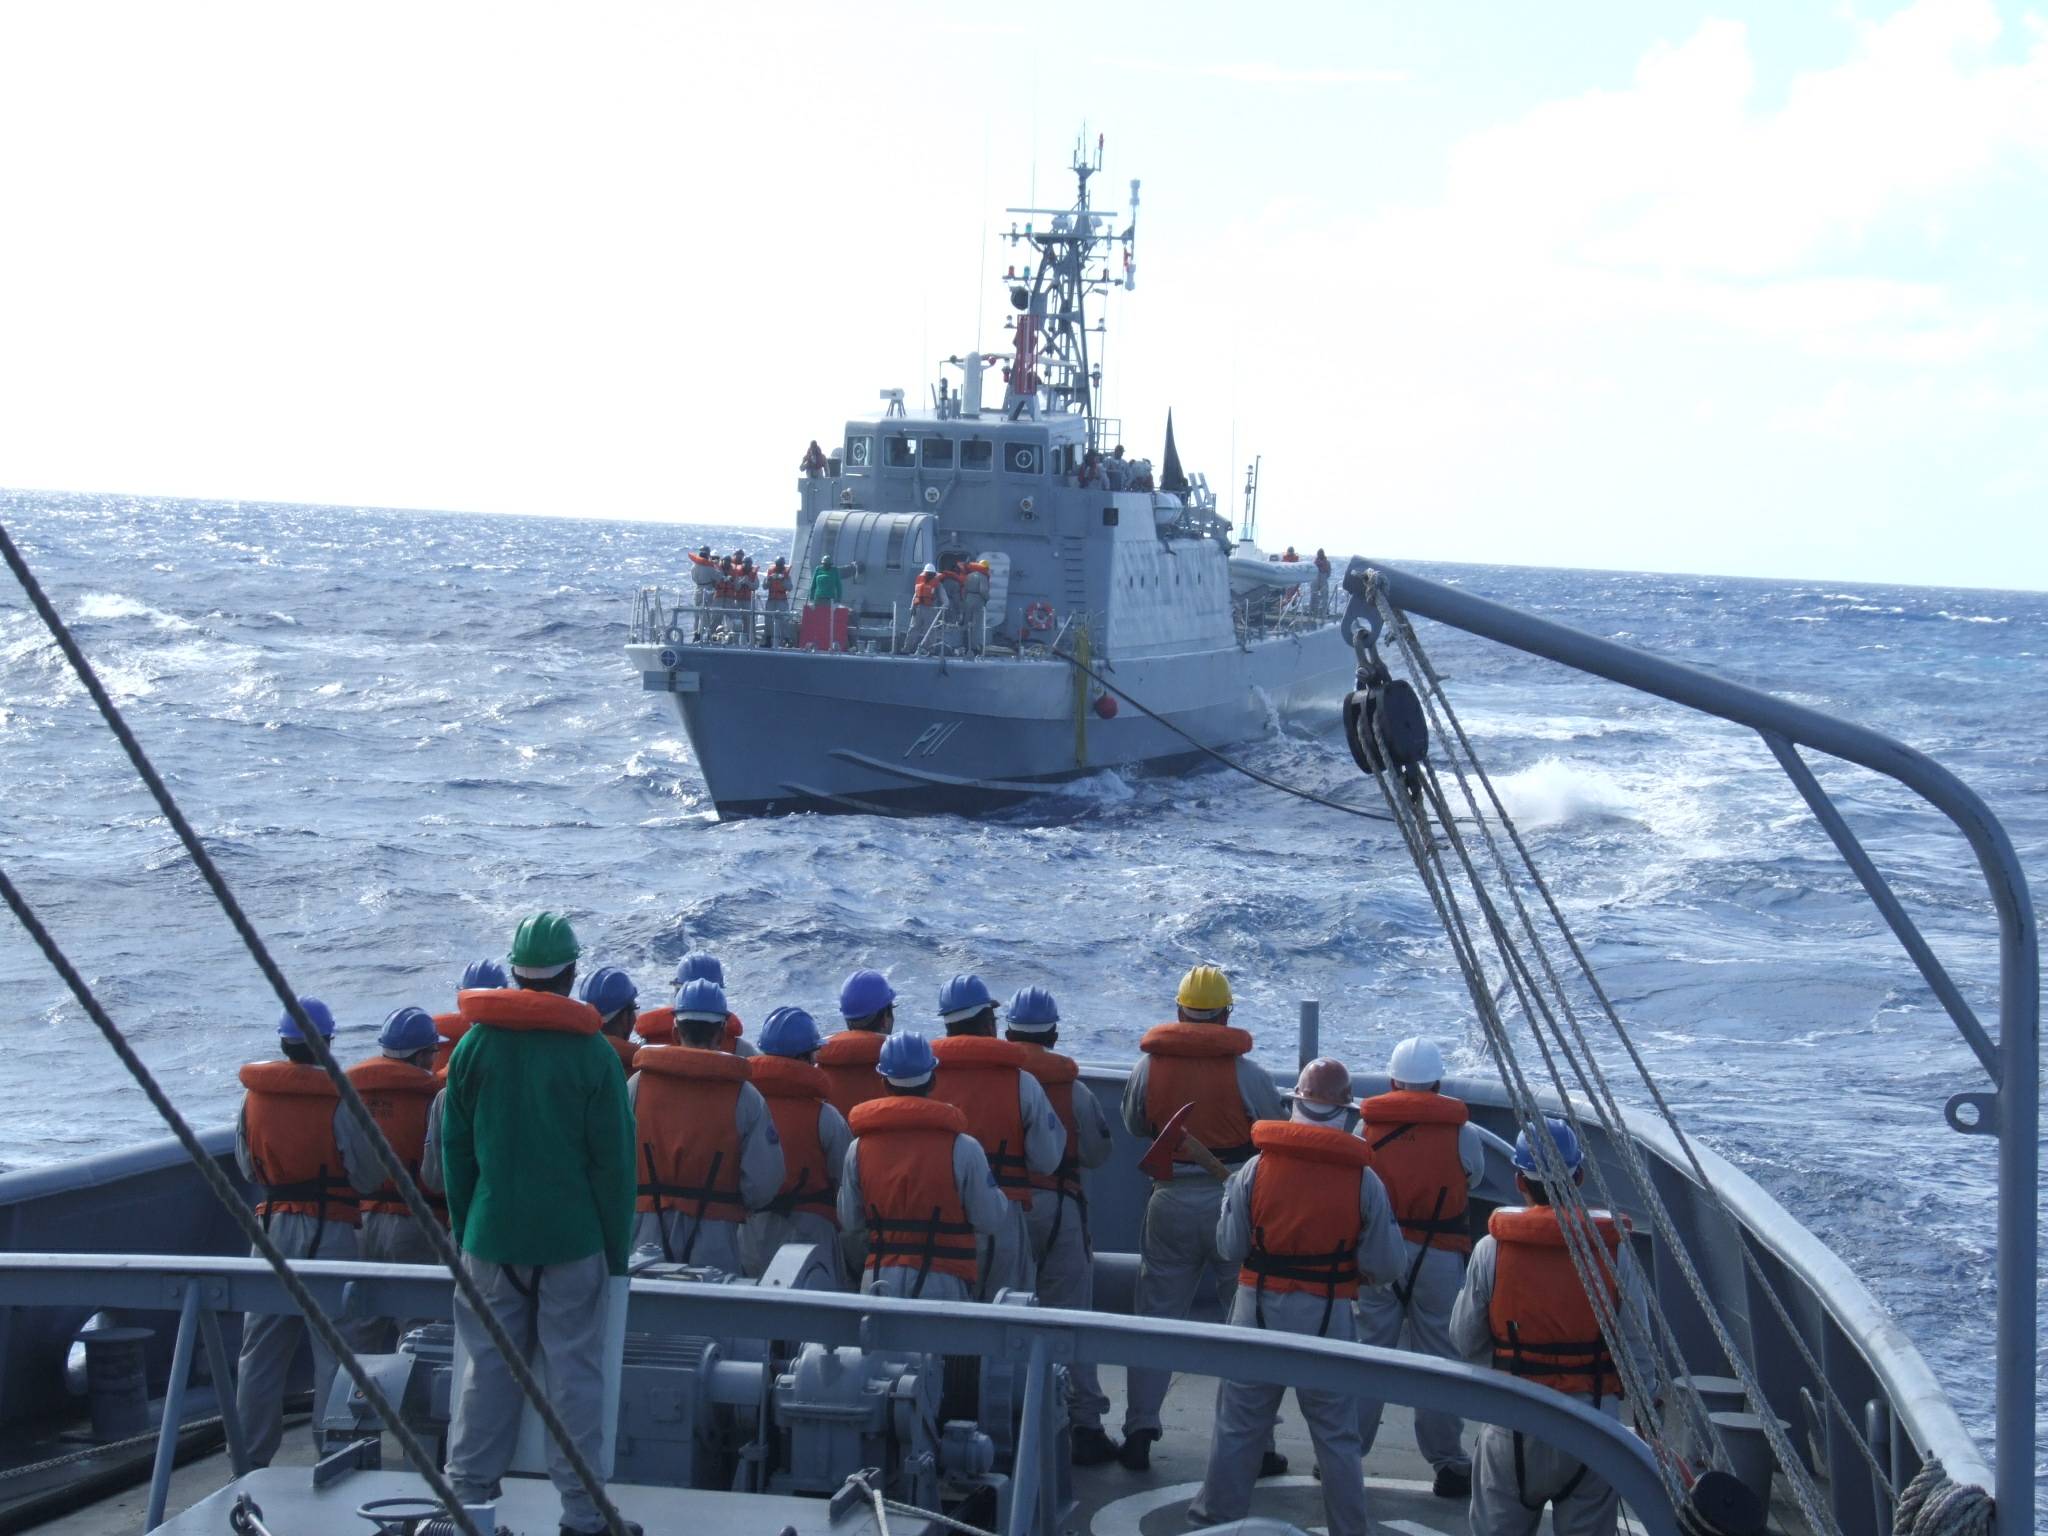 Realizando Transferência de Óleo no Mar (TOM) para o NPa Brendan Simbwaye, da Marinha da Namíbia, na manhã de 5 de abril de 2009, durante a comissão de apoio a travessia desse navio para o seu país. (foto Corveta, via Base Naval de Aratu).